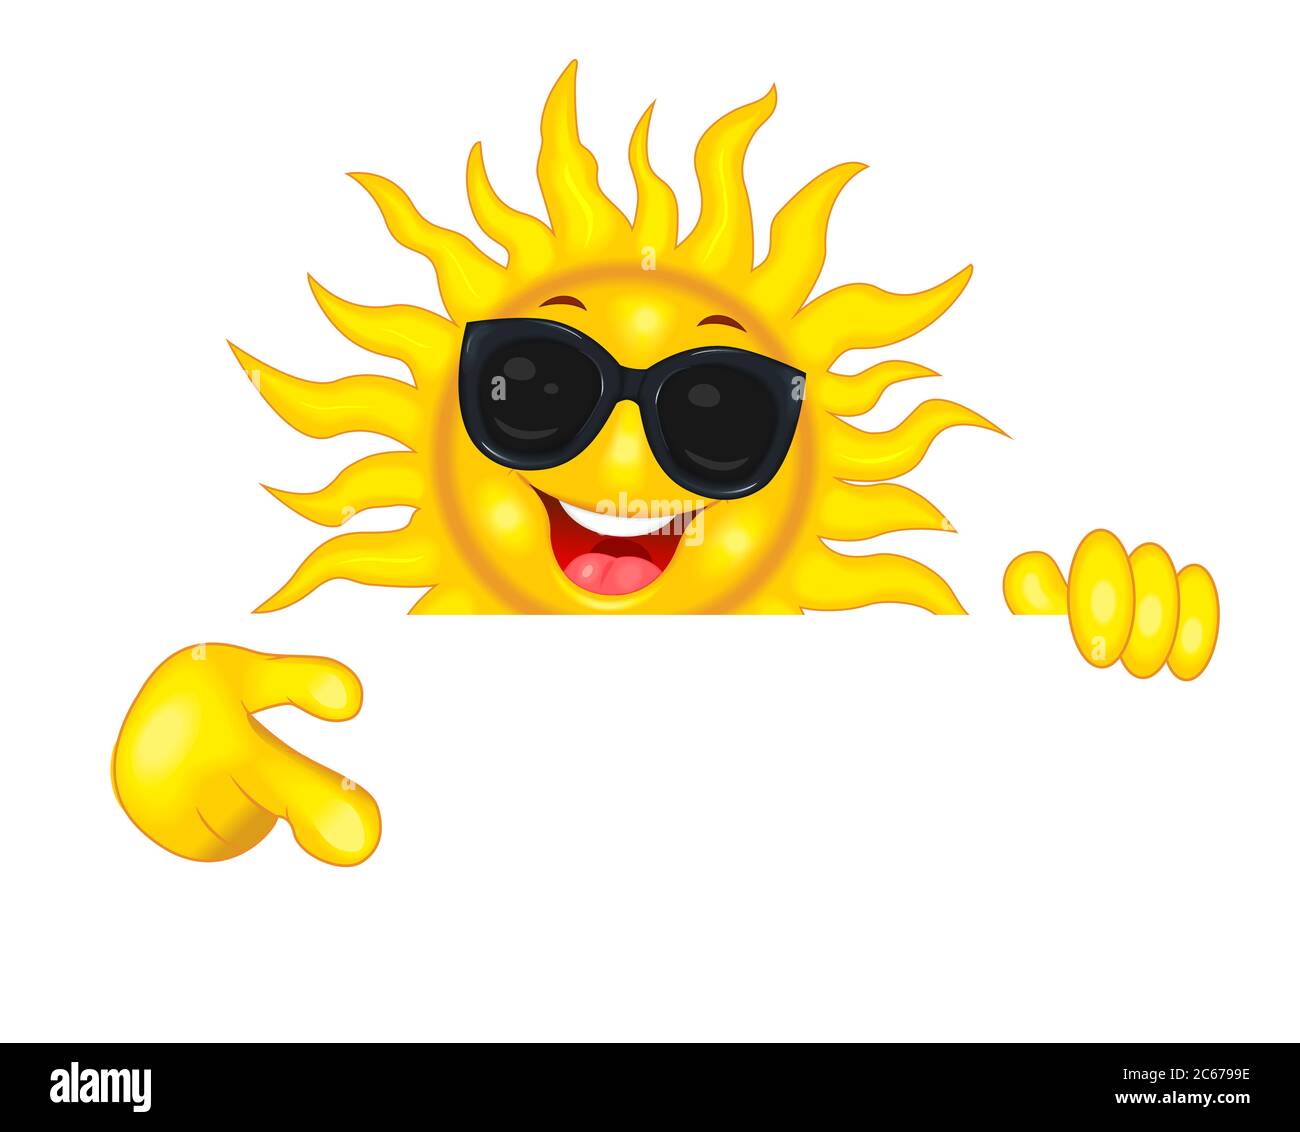 Fröhliche Cartoon Sonne in Sonnenbrillen. Die lächelnde Sonne zeigt mit der Hand eine Richtung, lädt ein, achtet darauf. Sonne auf weißem Hintergrund. Stock Vektor